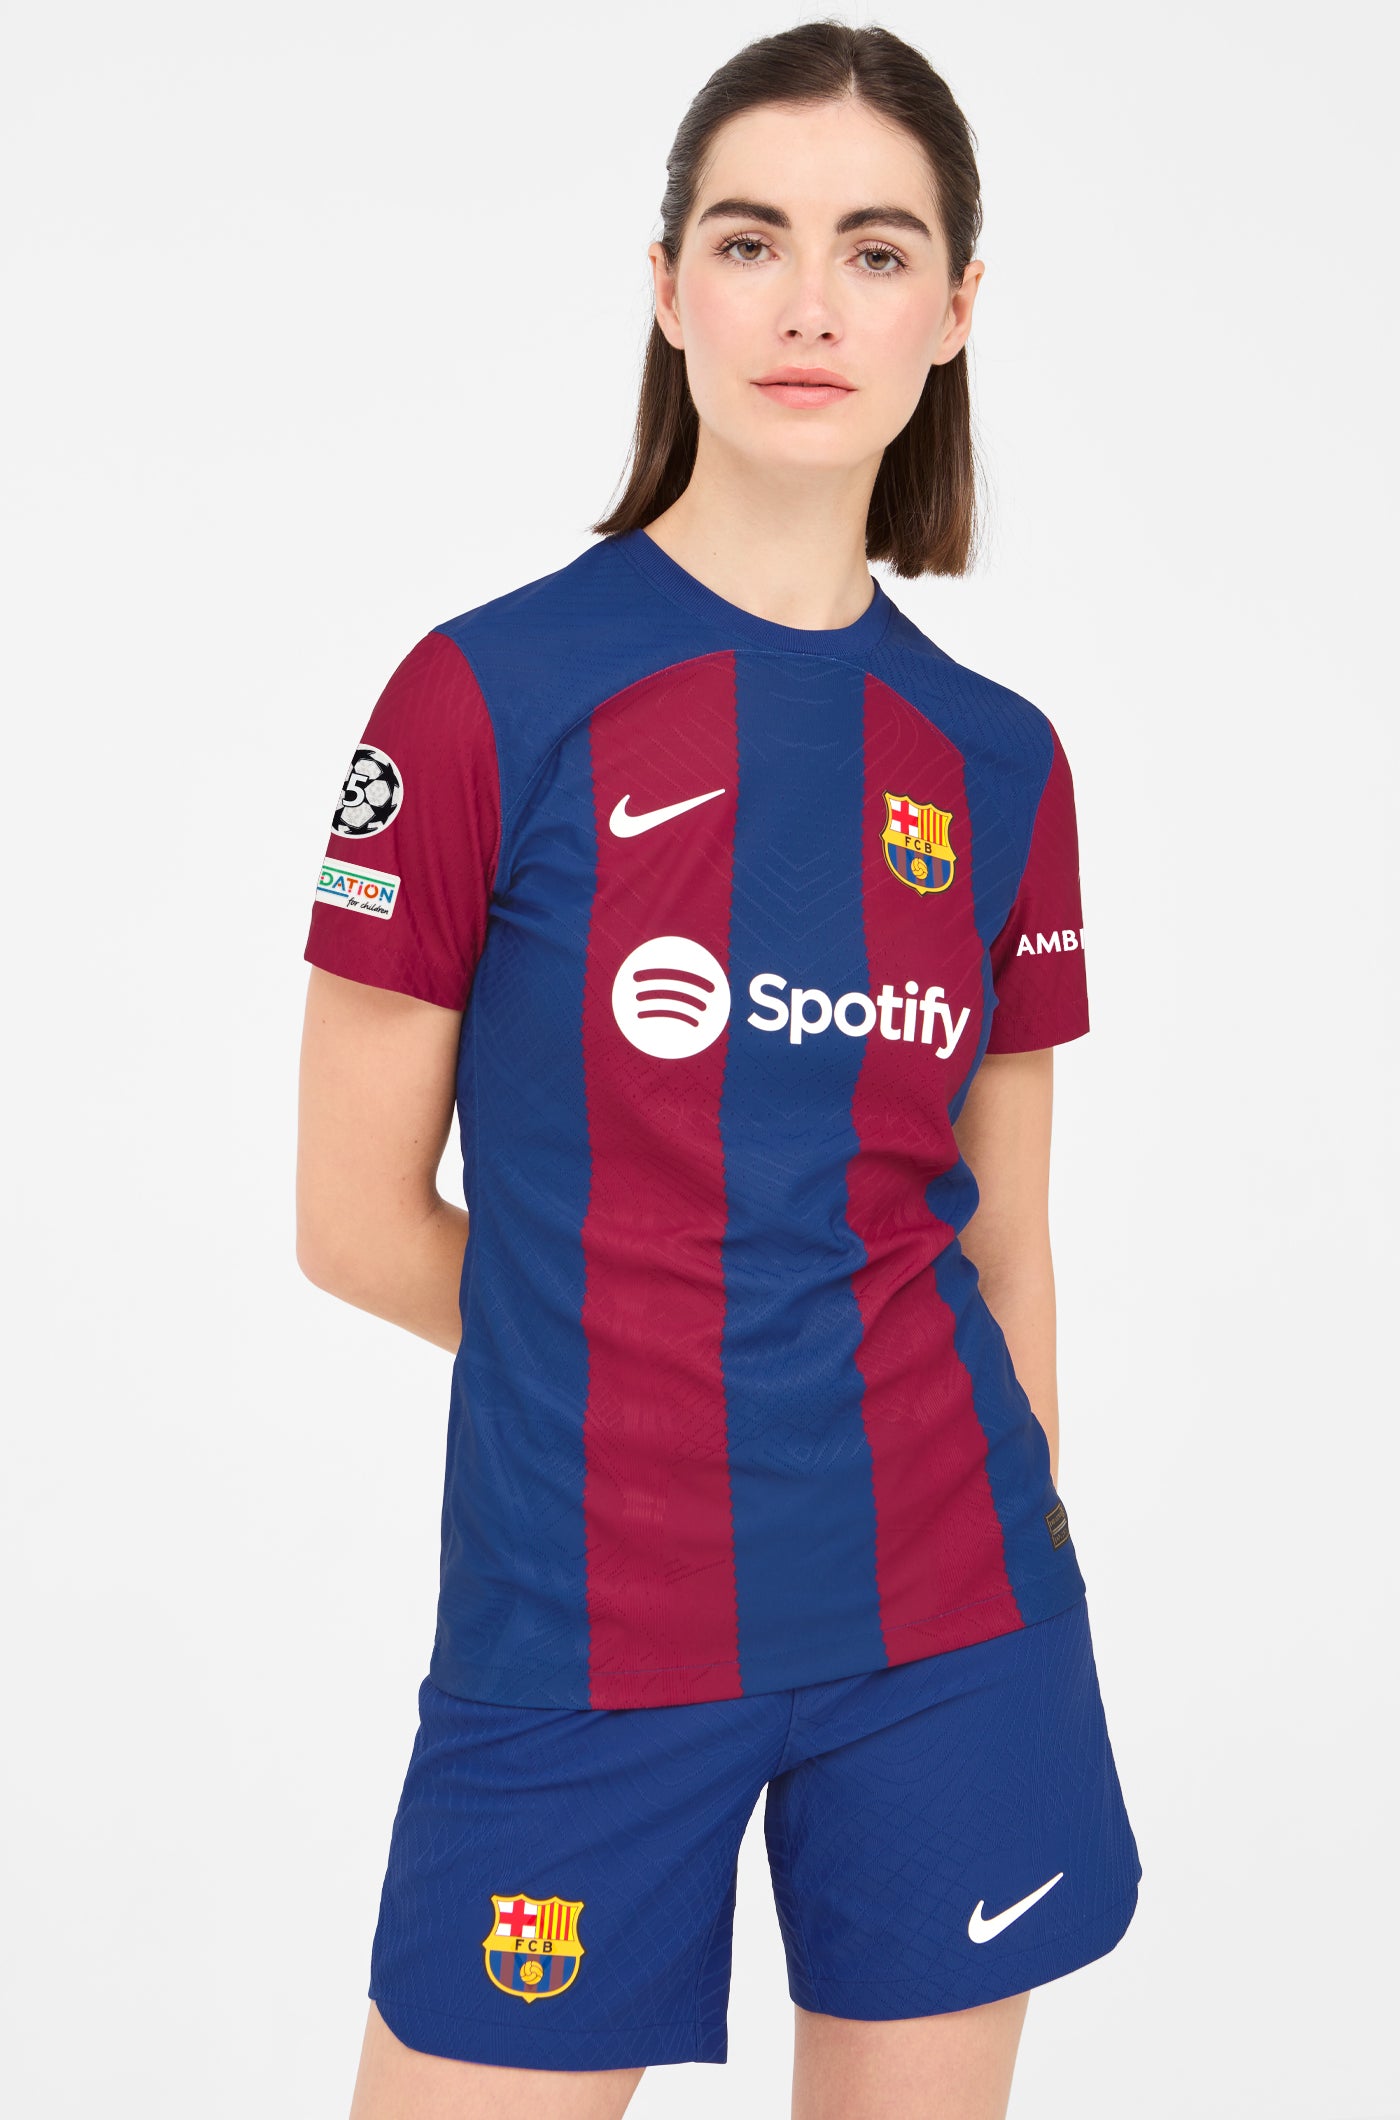 UCL FC Barcelona Home Shirt 23/24 Player's Edition - Women - CHRISTENSEN